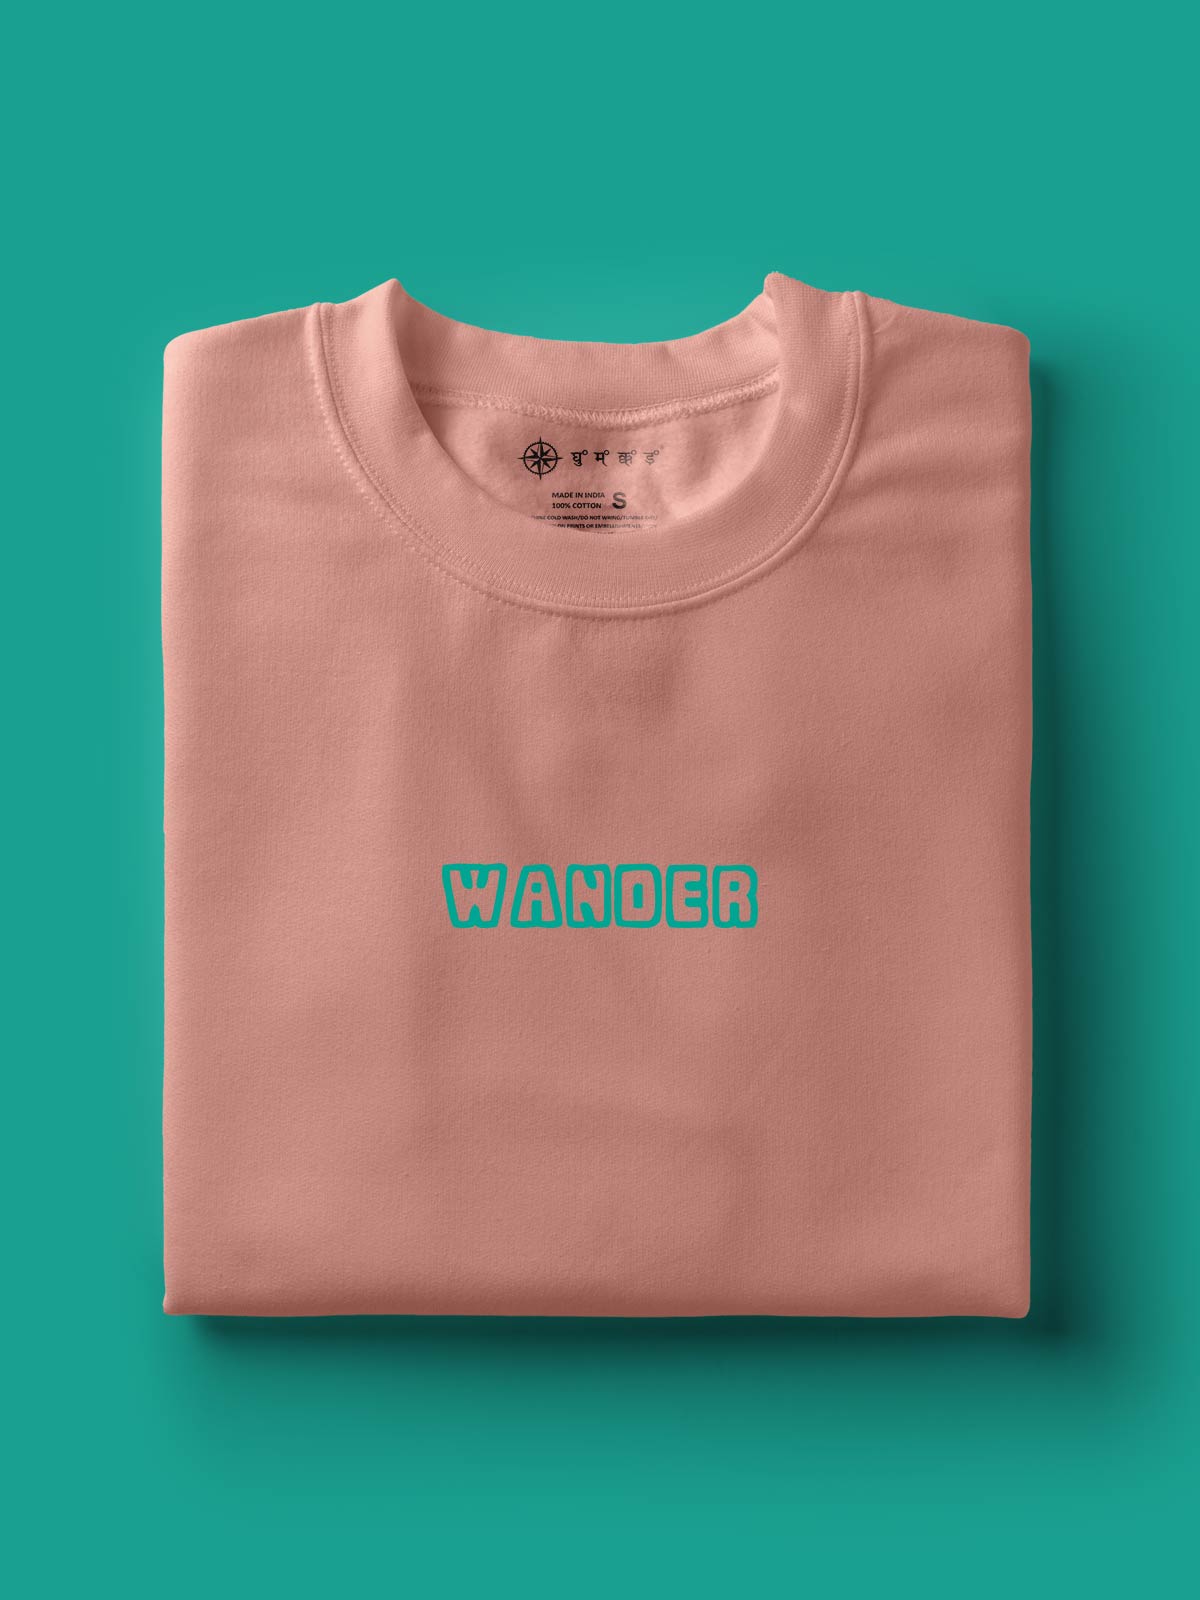 Wander-backprint-t-shirt-for-men by Ghumakkad